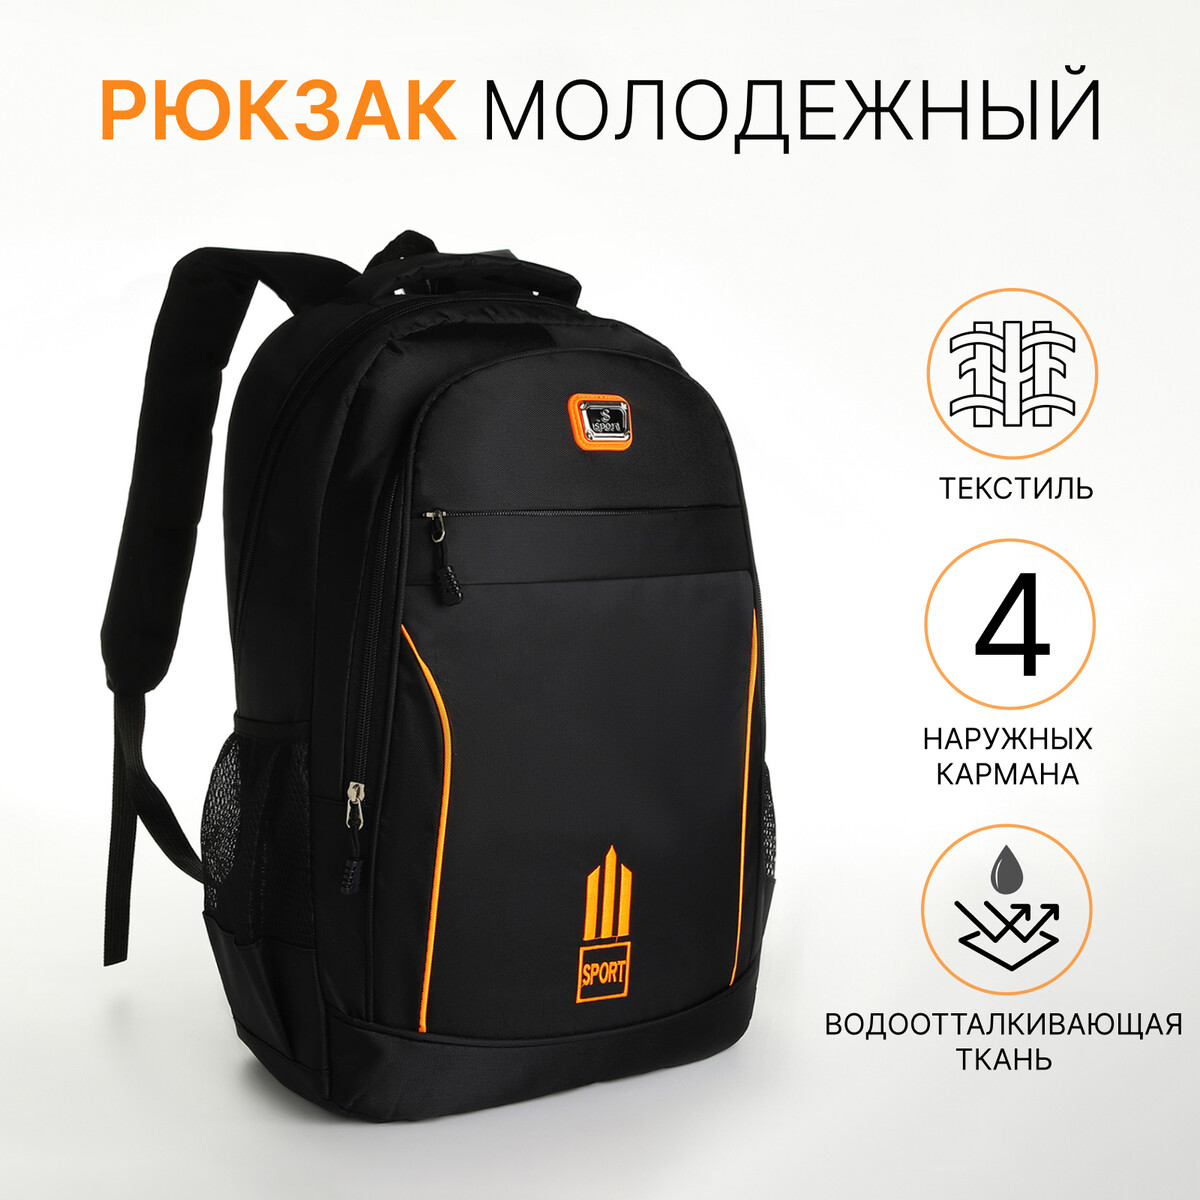 Рюкзак молодежный из текстиля на молнии, 4 кармана, цвет черный/оранжевый рюкзак школьный из текстиля на молнии 4 кармана кошелек серый оранжевый